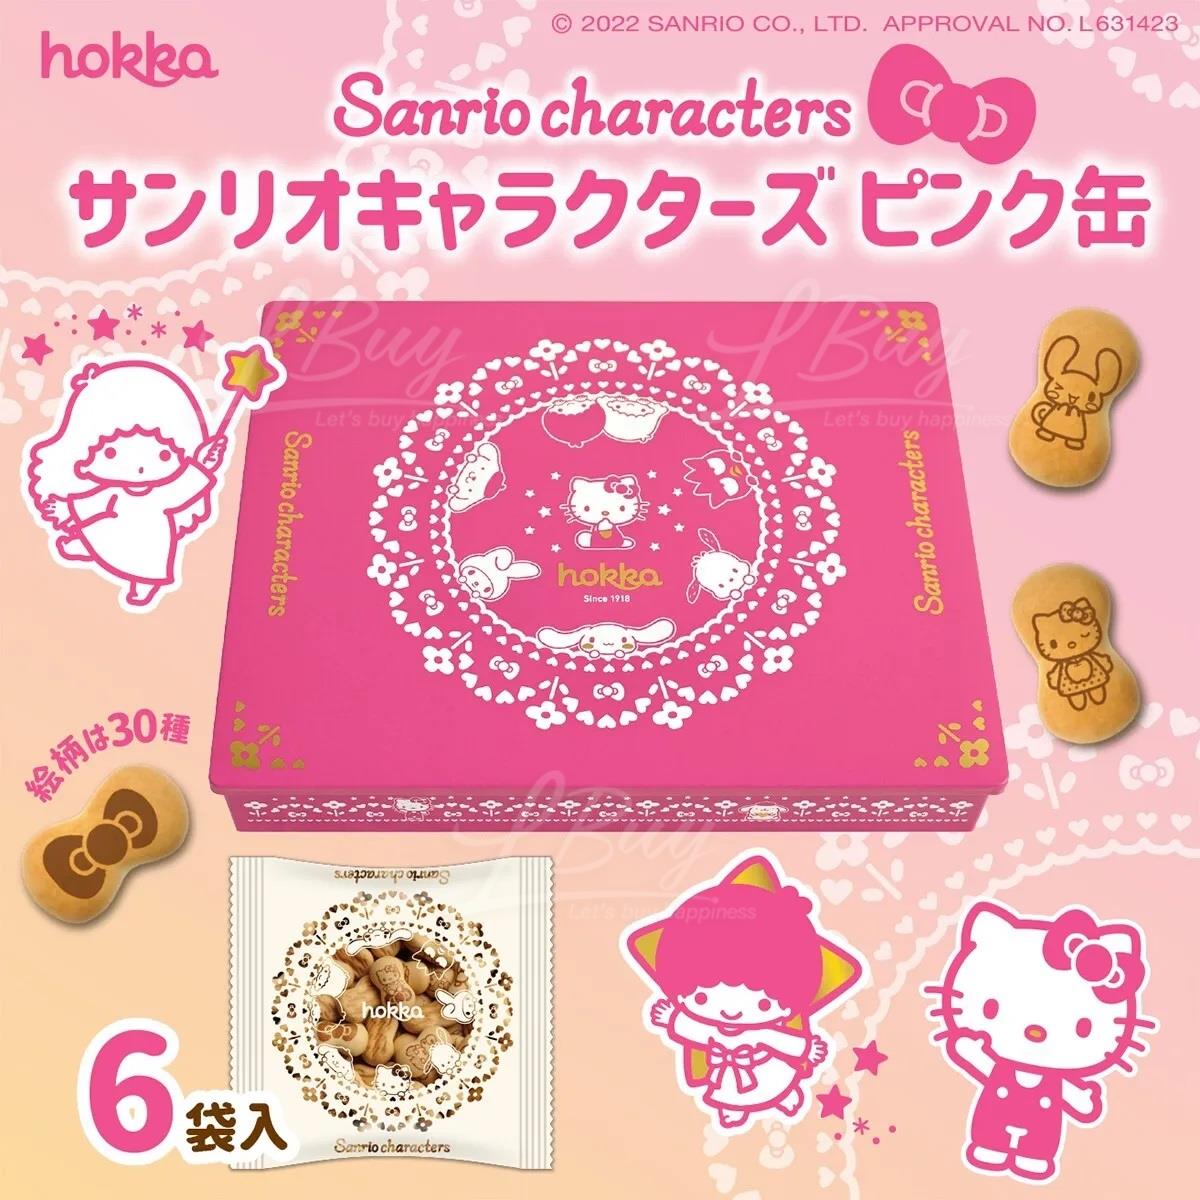 Buy Hokka Sanrio Character Cookies